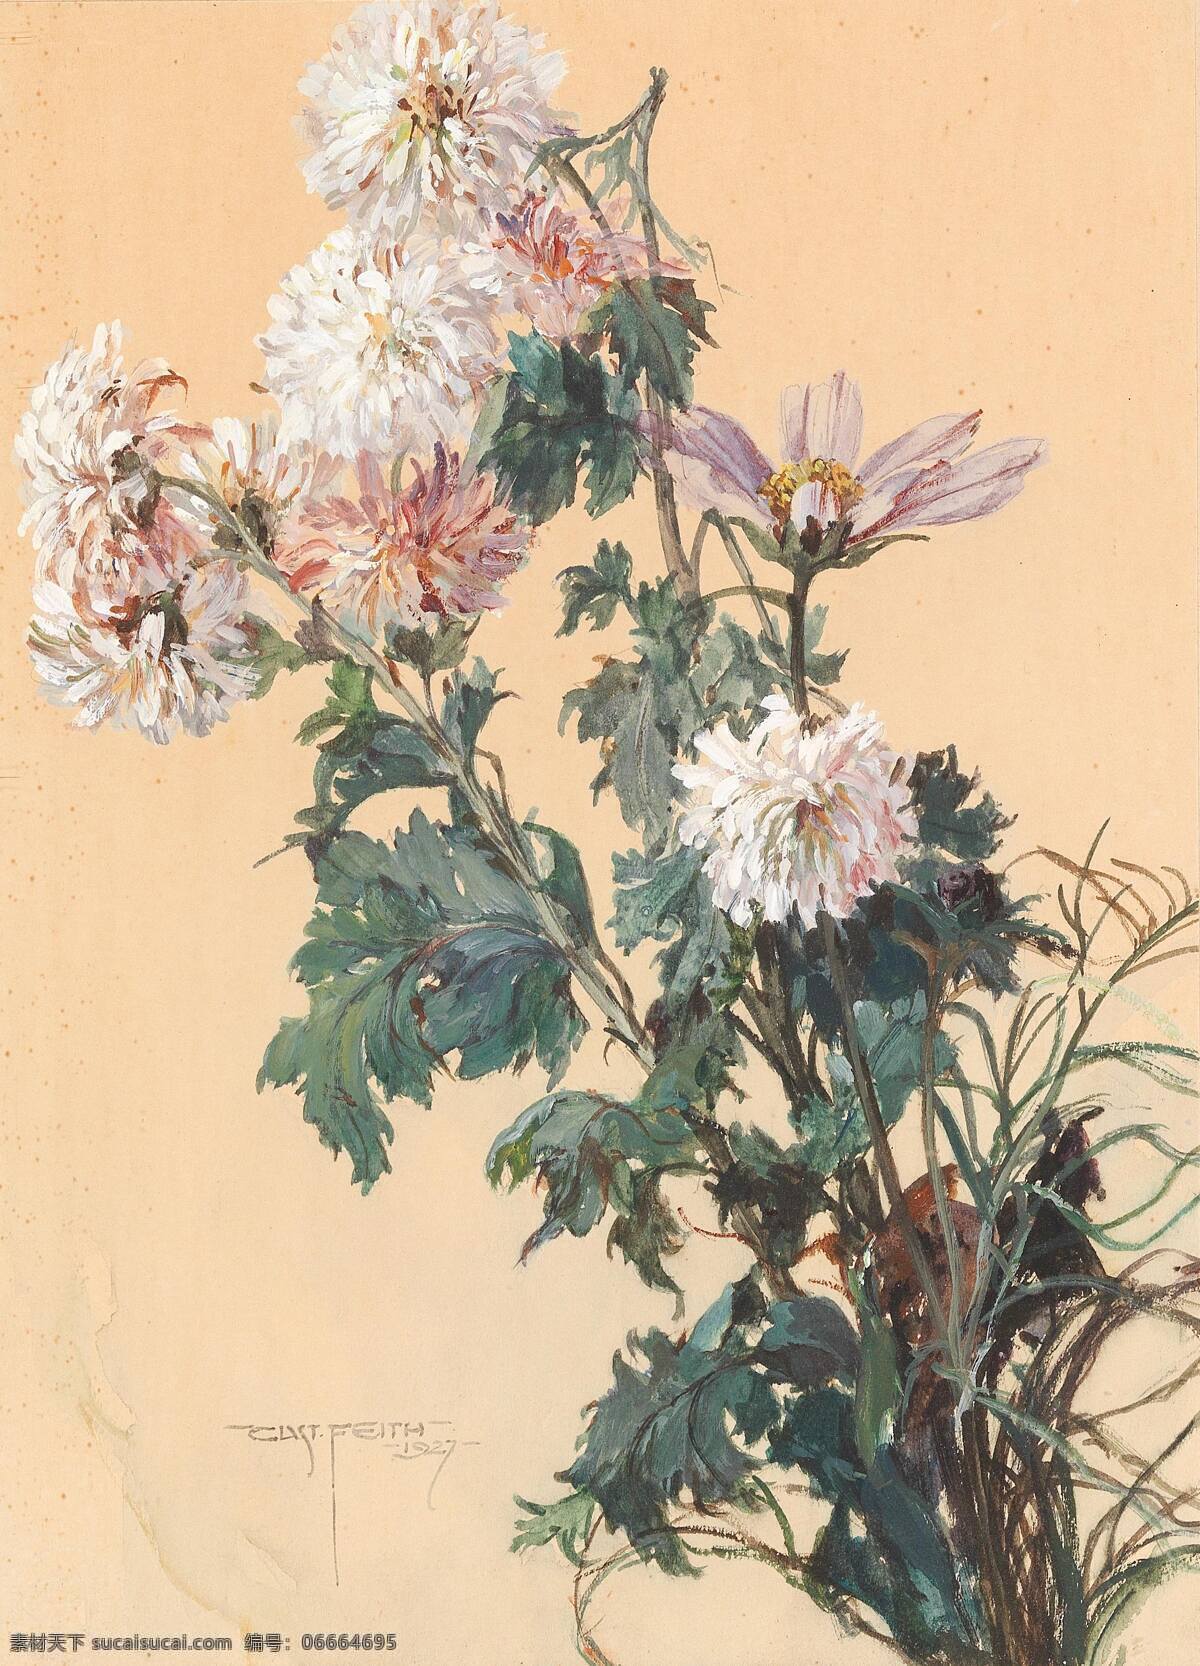 古斯塔夫 费斯作品 奥地利画家 静物鲜花 草甸花 盛开 世纪 水彩画 文化艺术 绘画书法